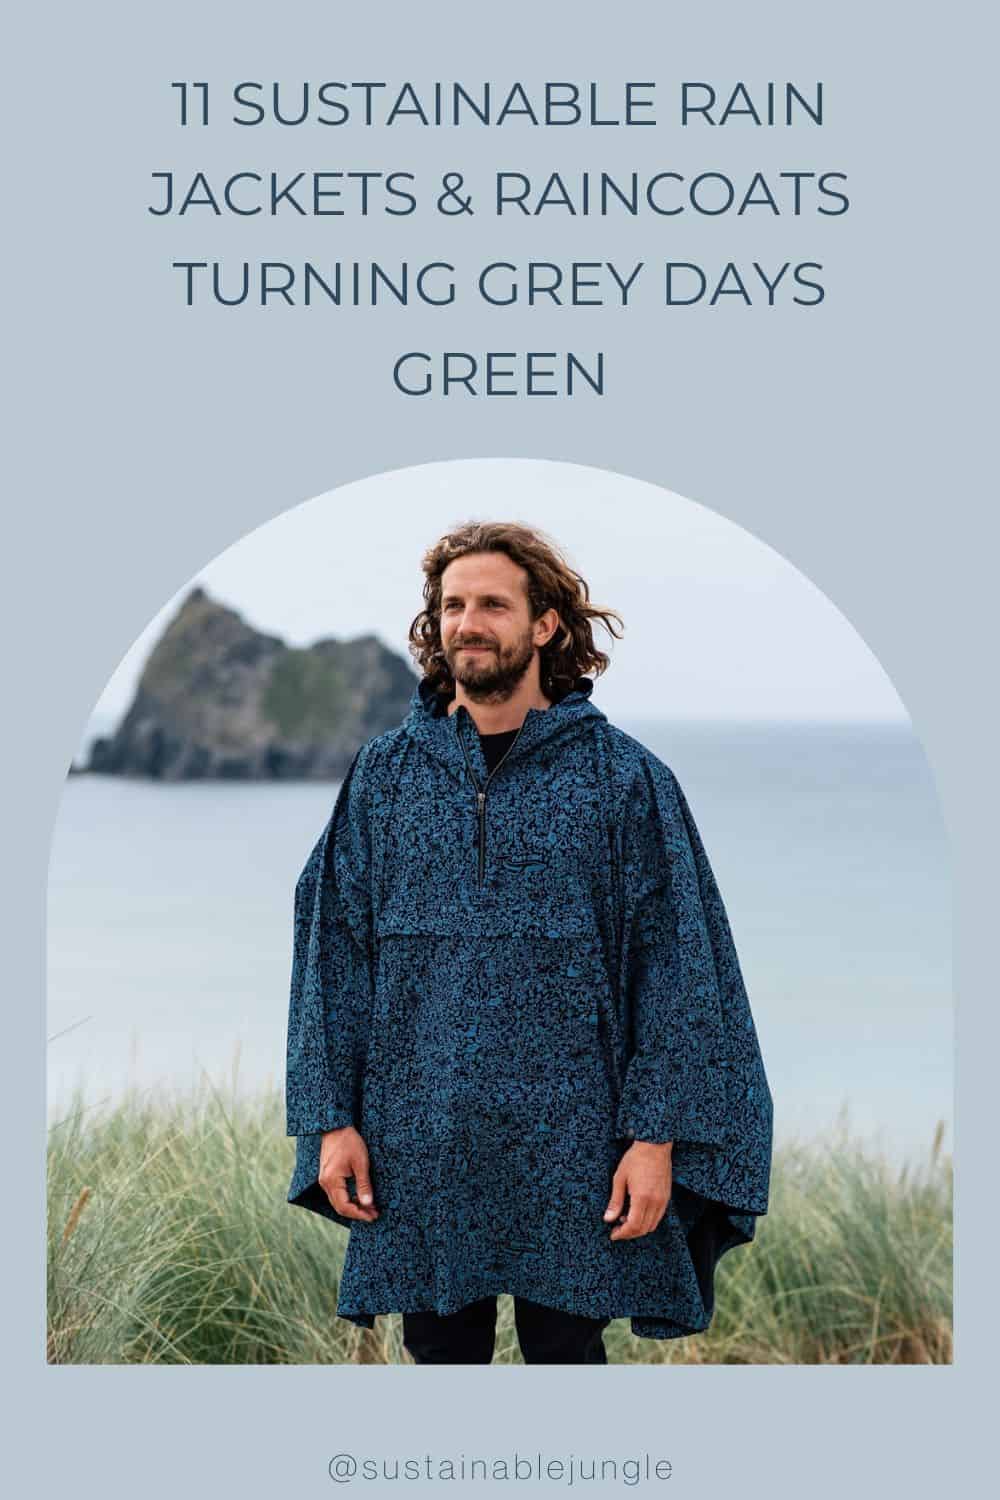 11可持续的雨衣和雨衣将灰色的日子变成绿色Rapanui图片#可持续的雨衣#可持续的雨衣#环保的雨衣#可持续的防水夹克#可持续的丛林